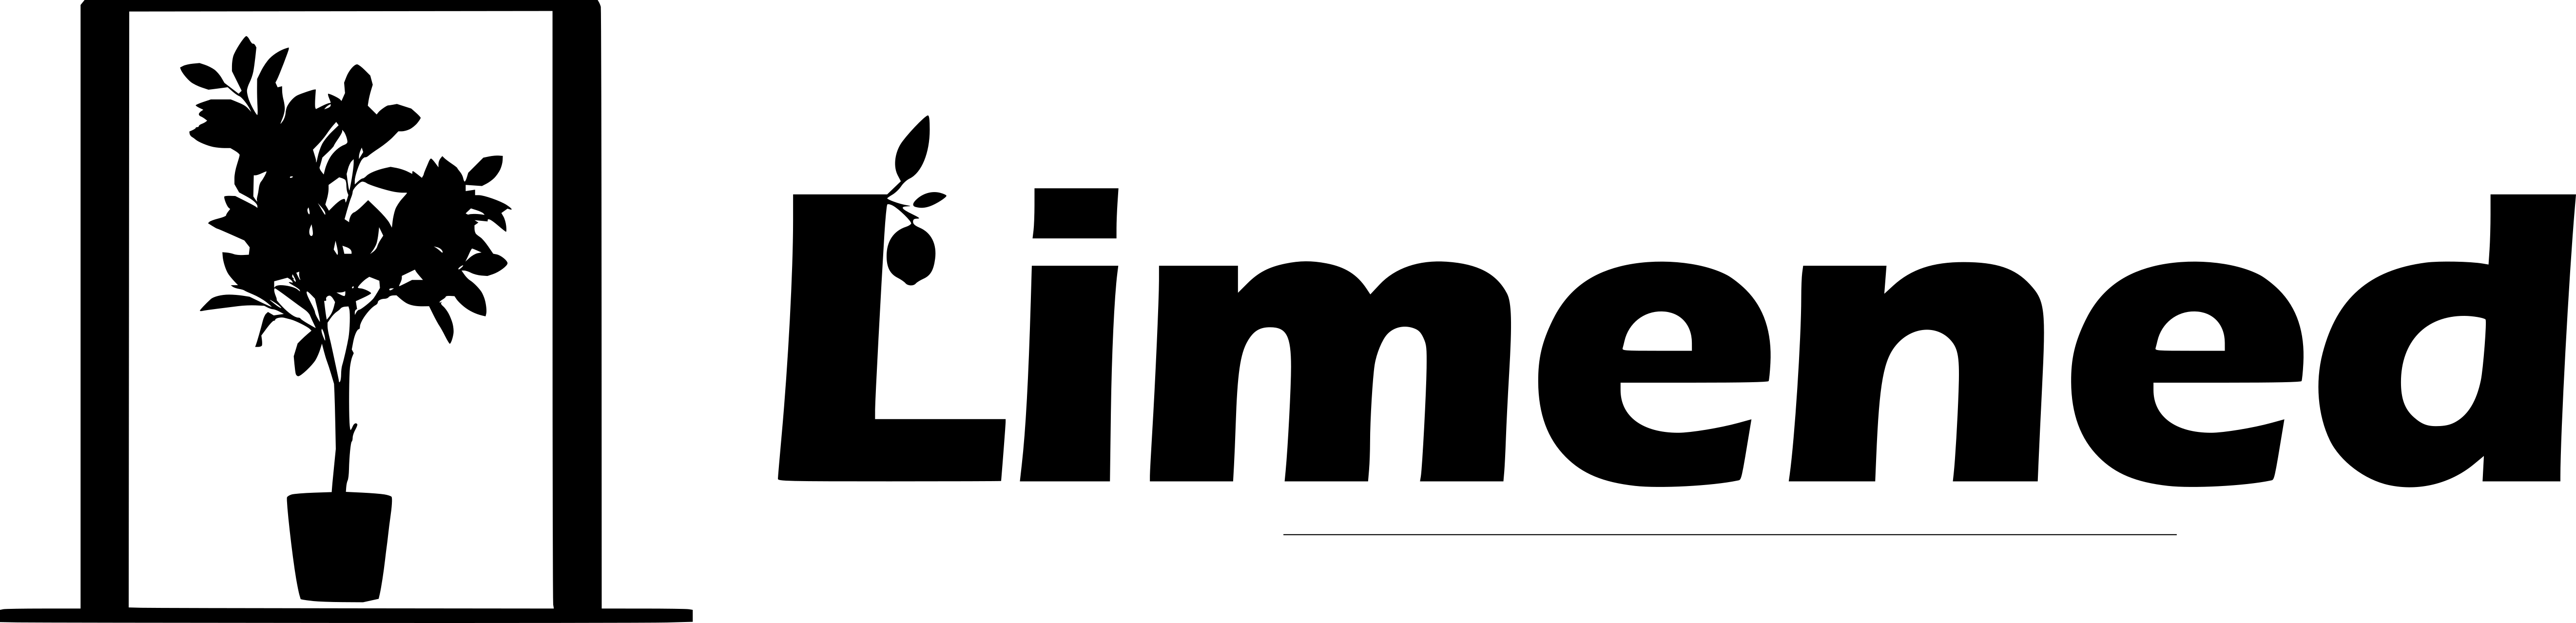 Limened header logo